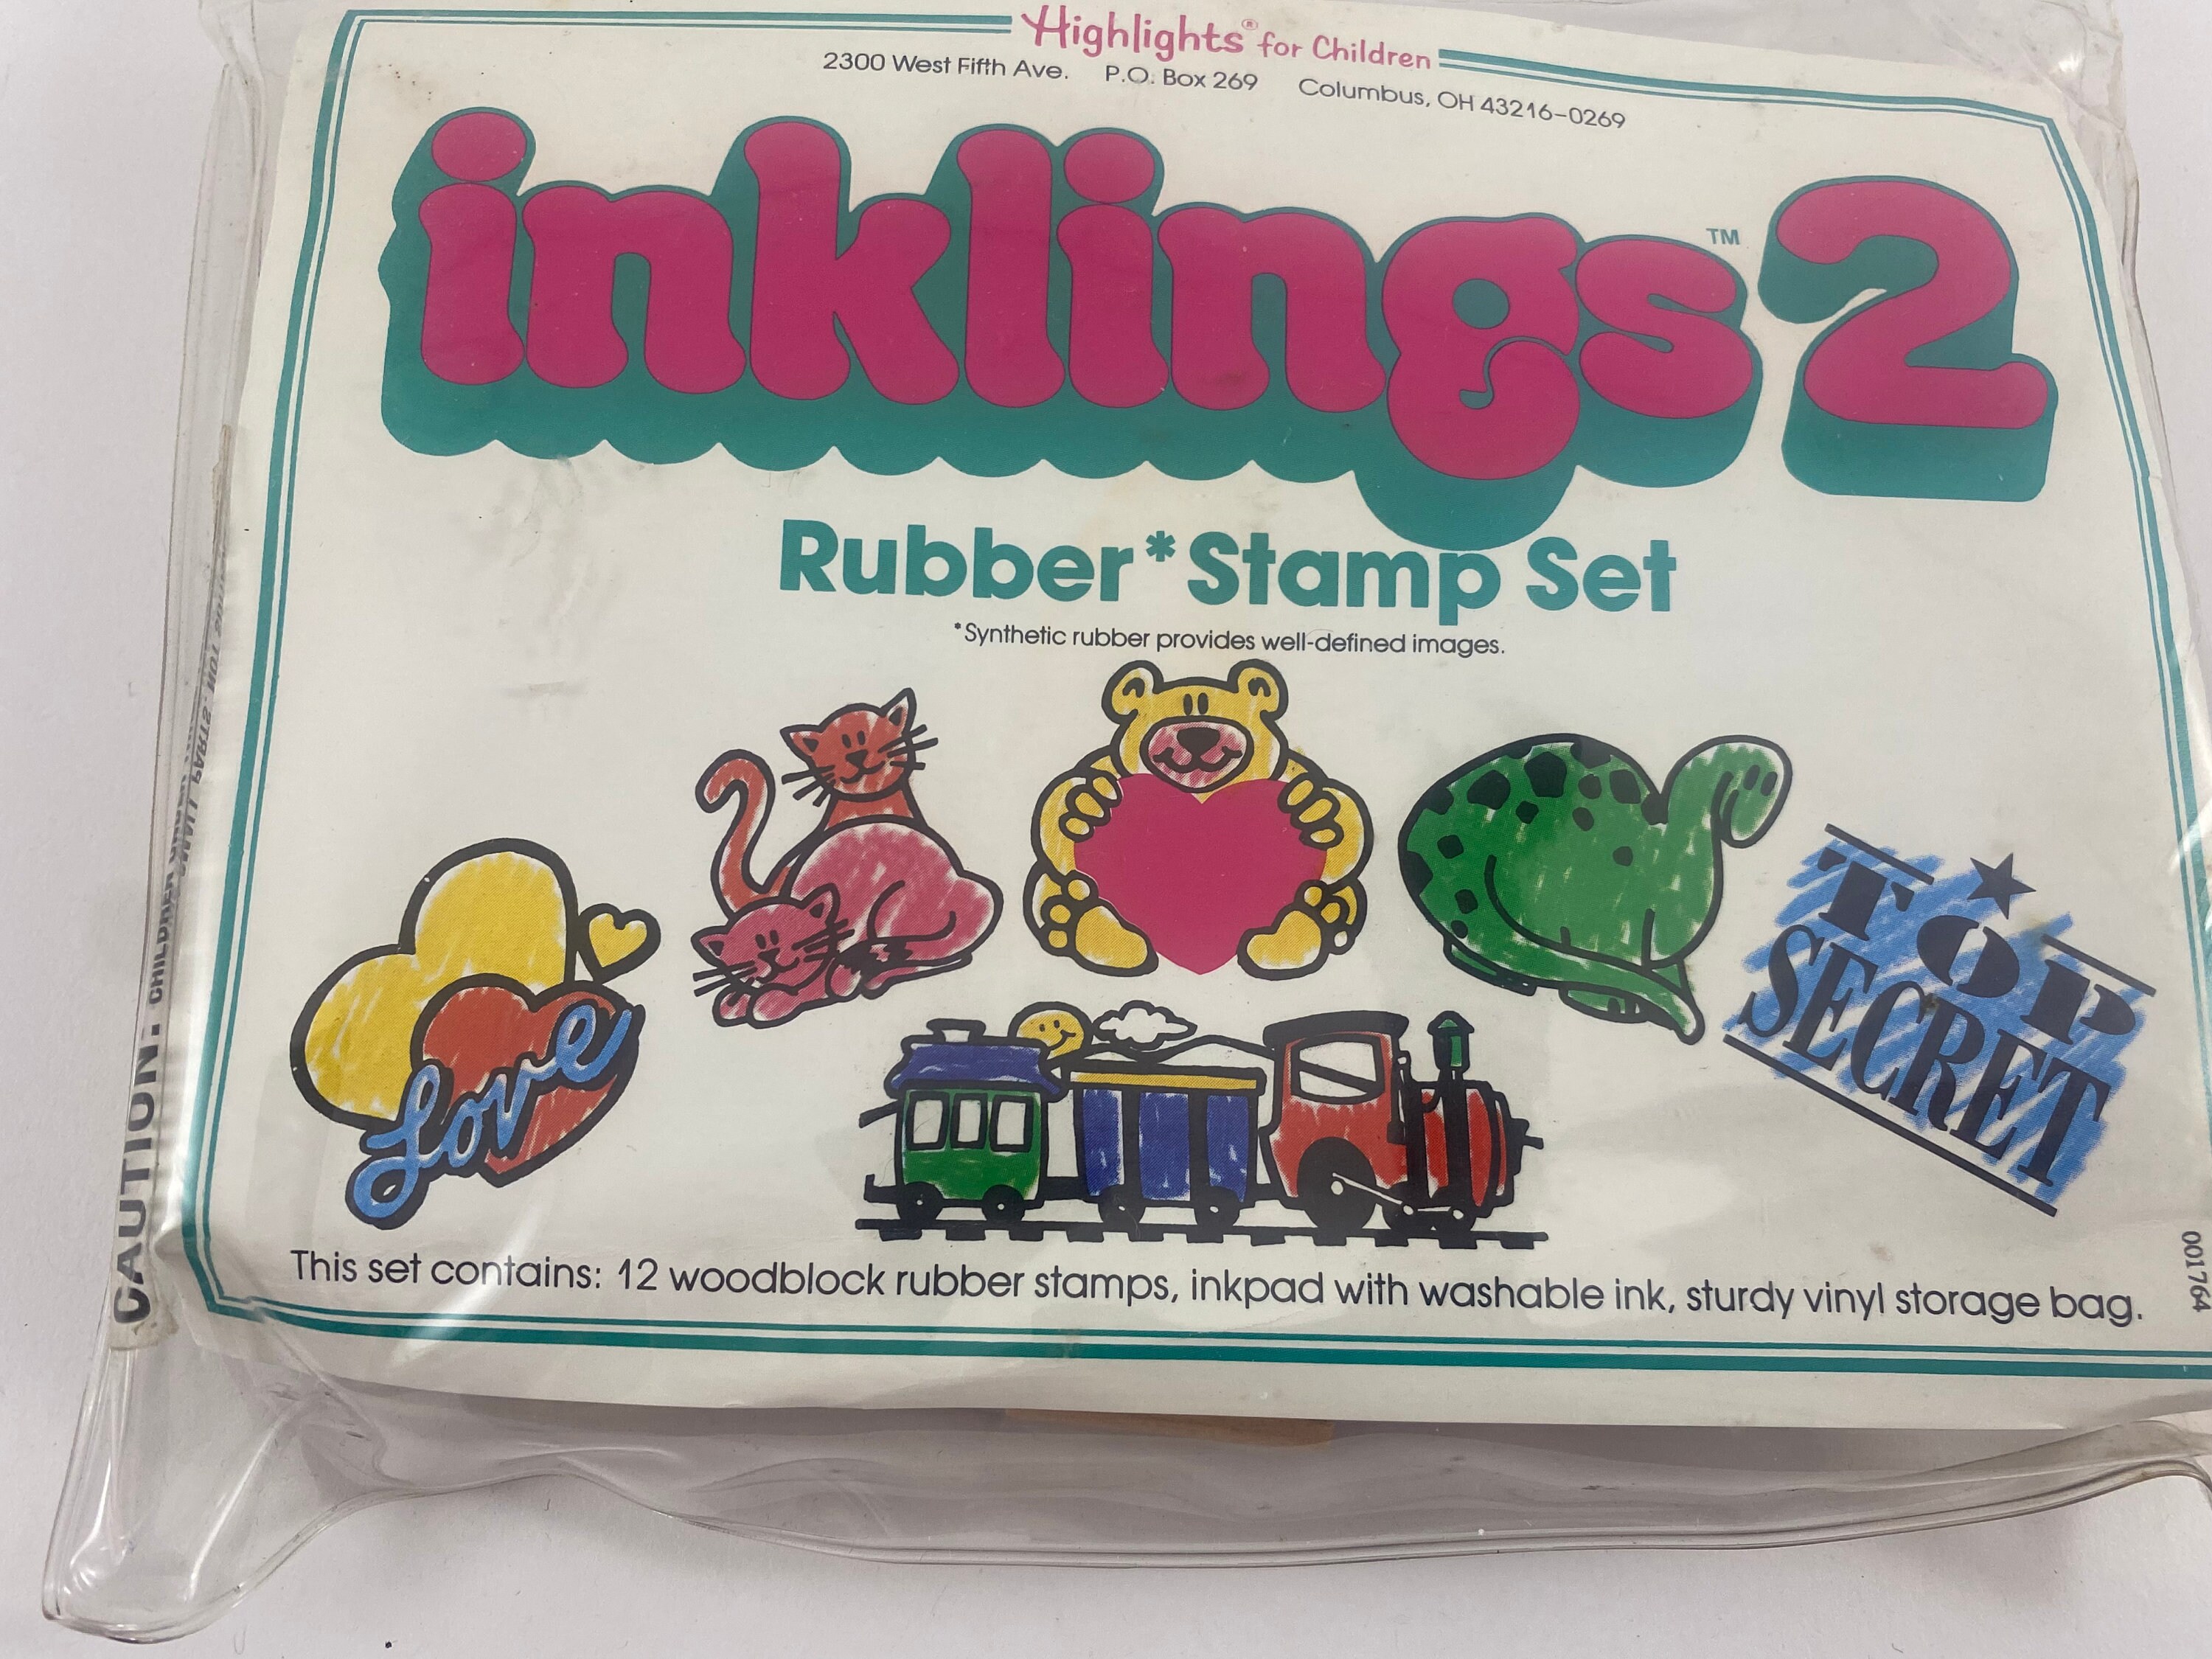 Stamps & Ink Stamp Sets for Children